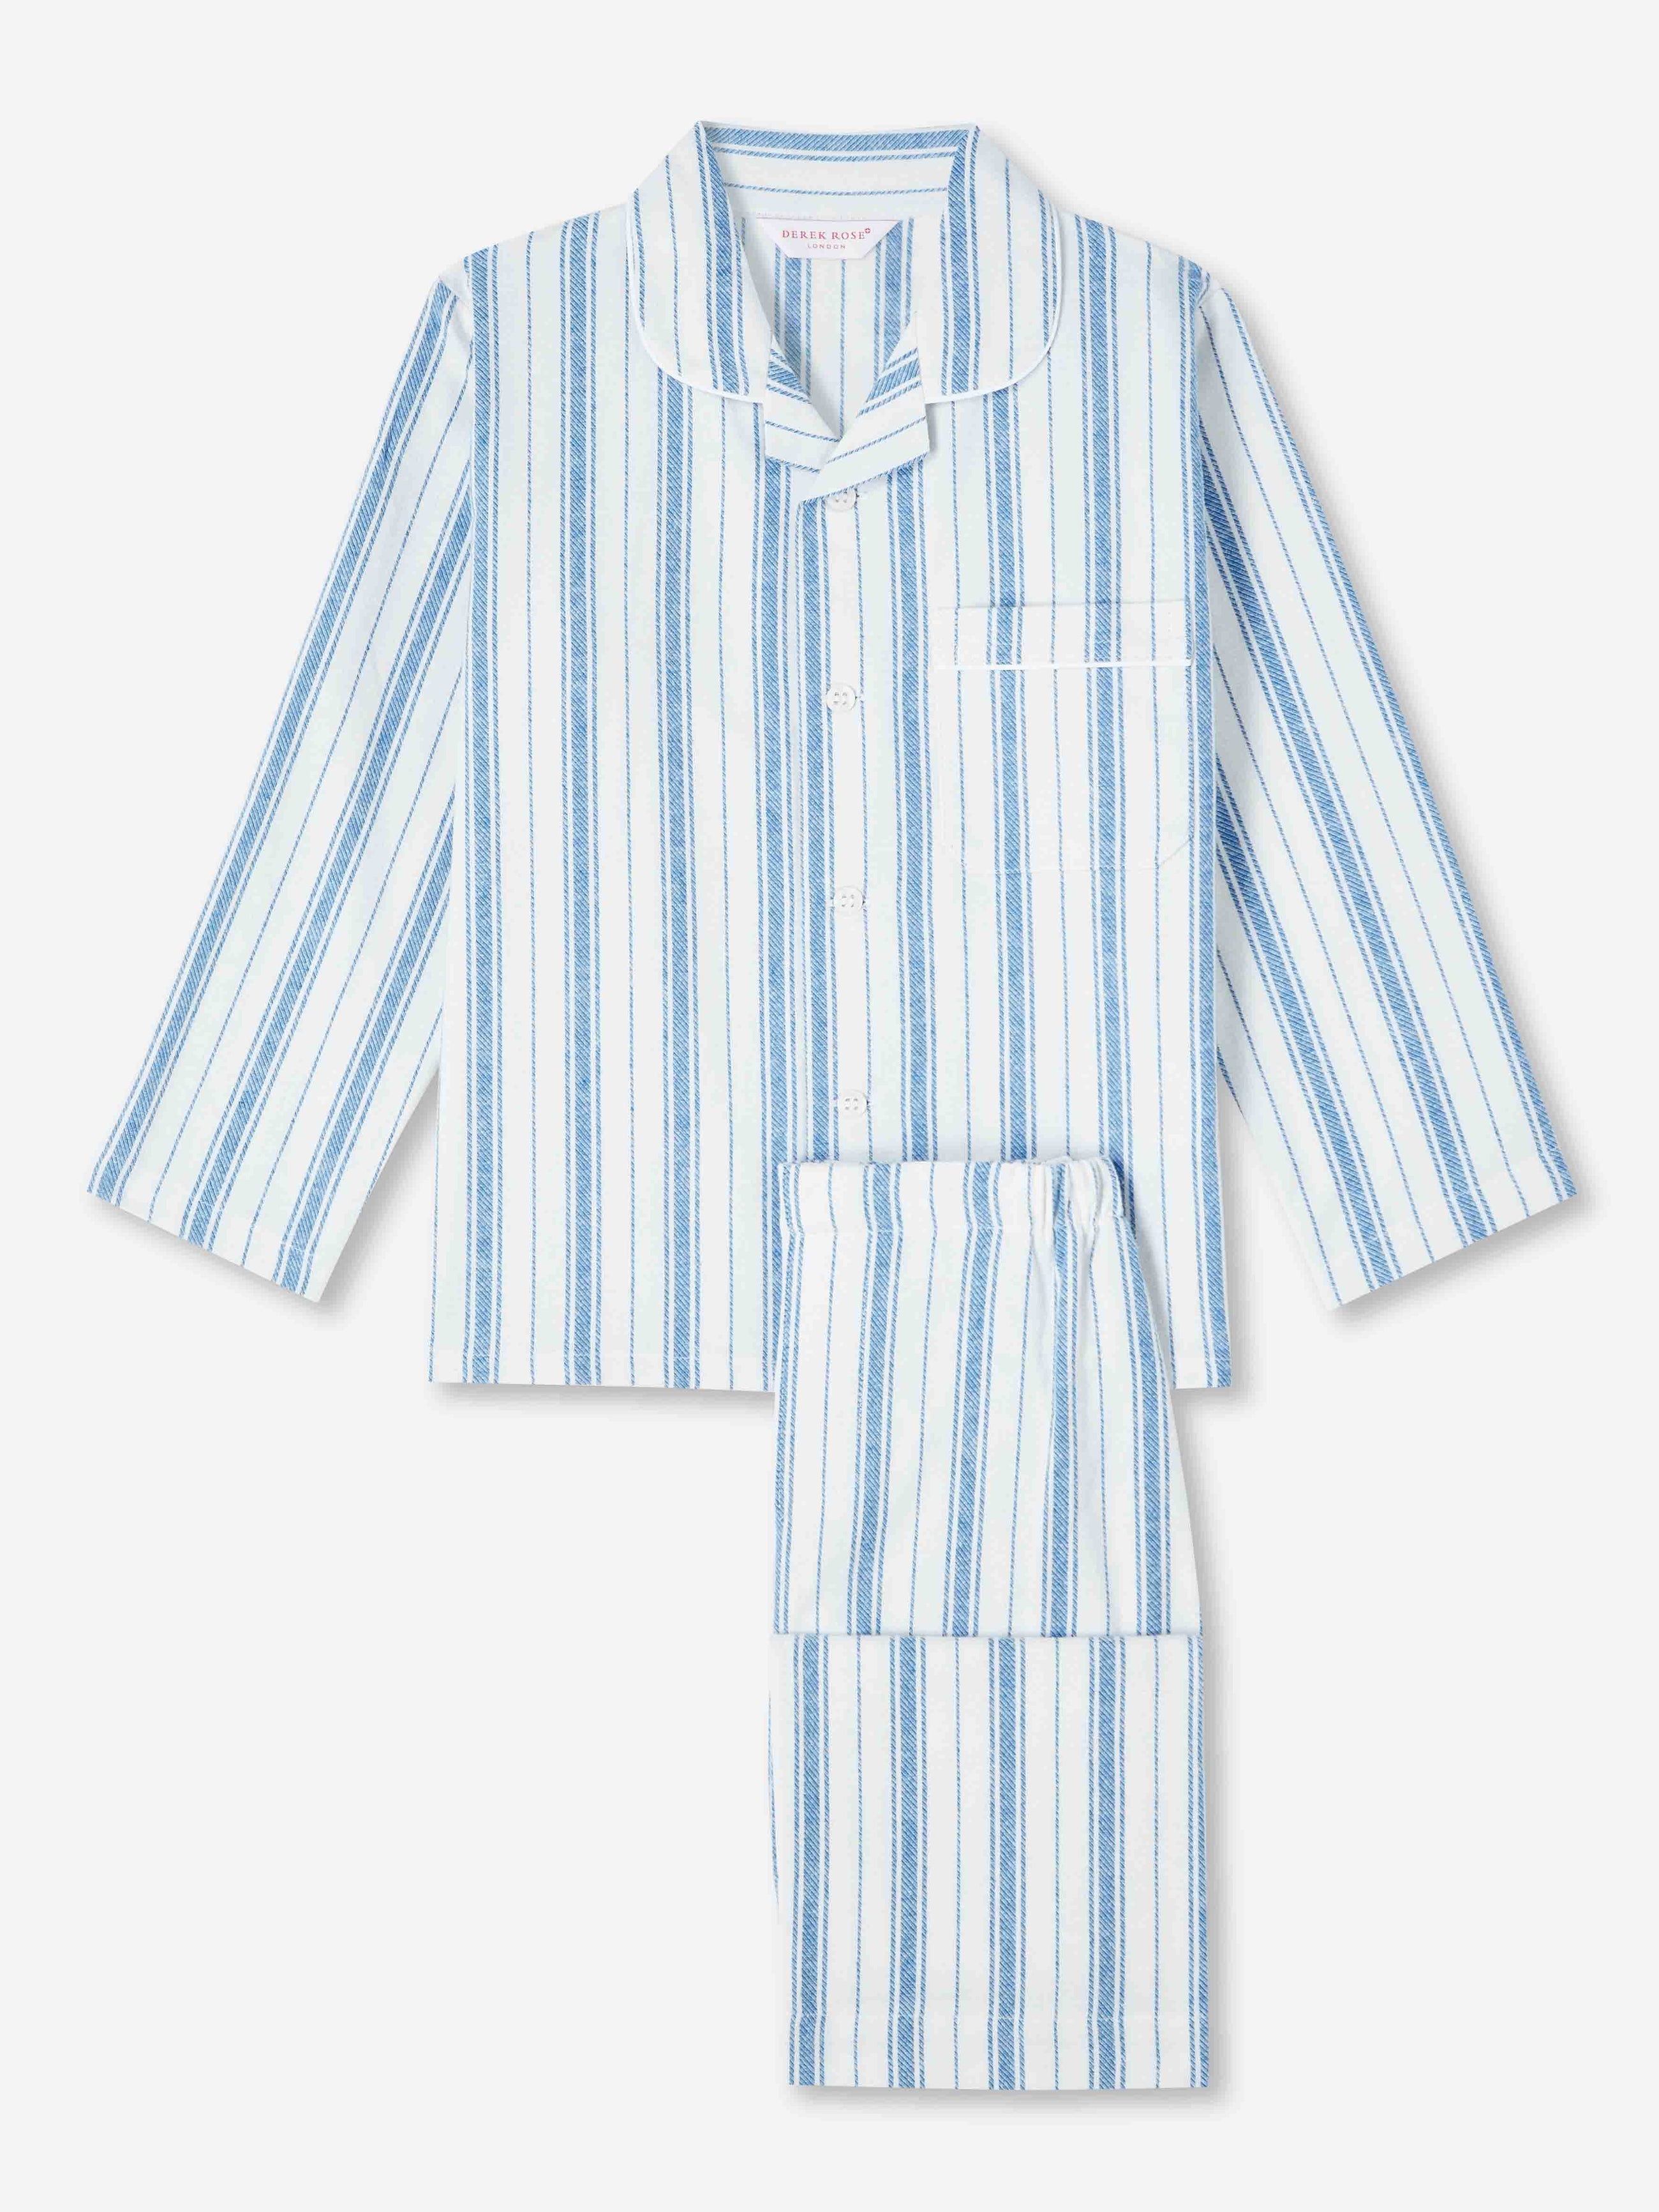 Kids' Pyjamas Kelburn 31 Brushed Cotton Blue